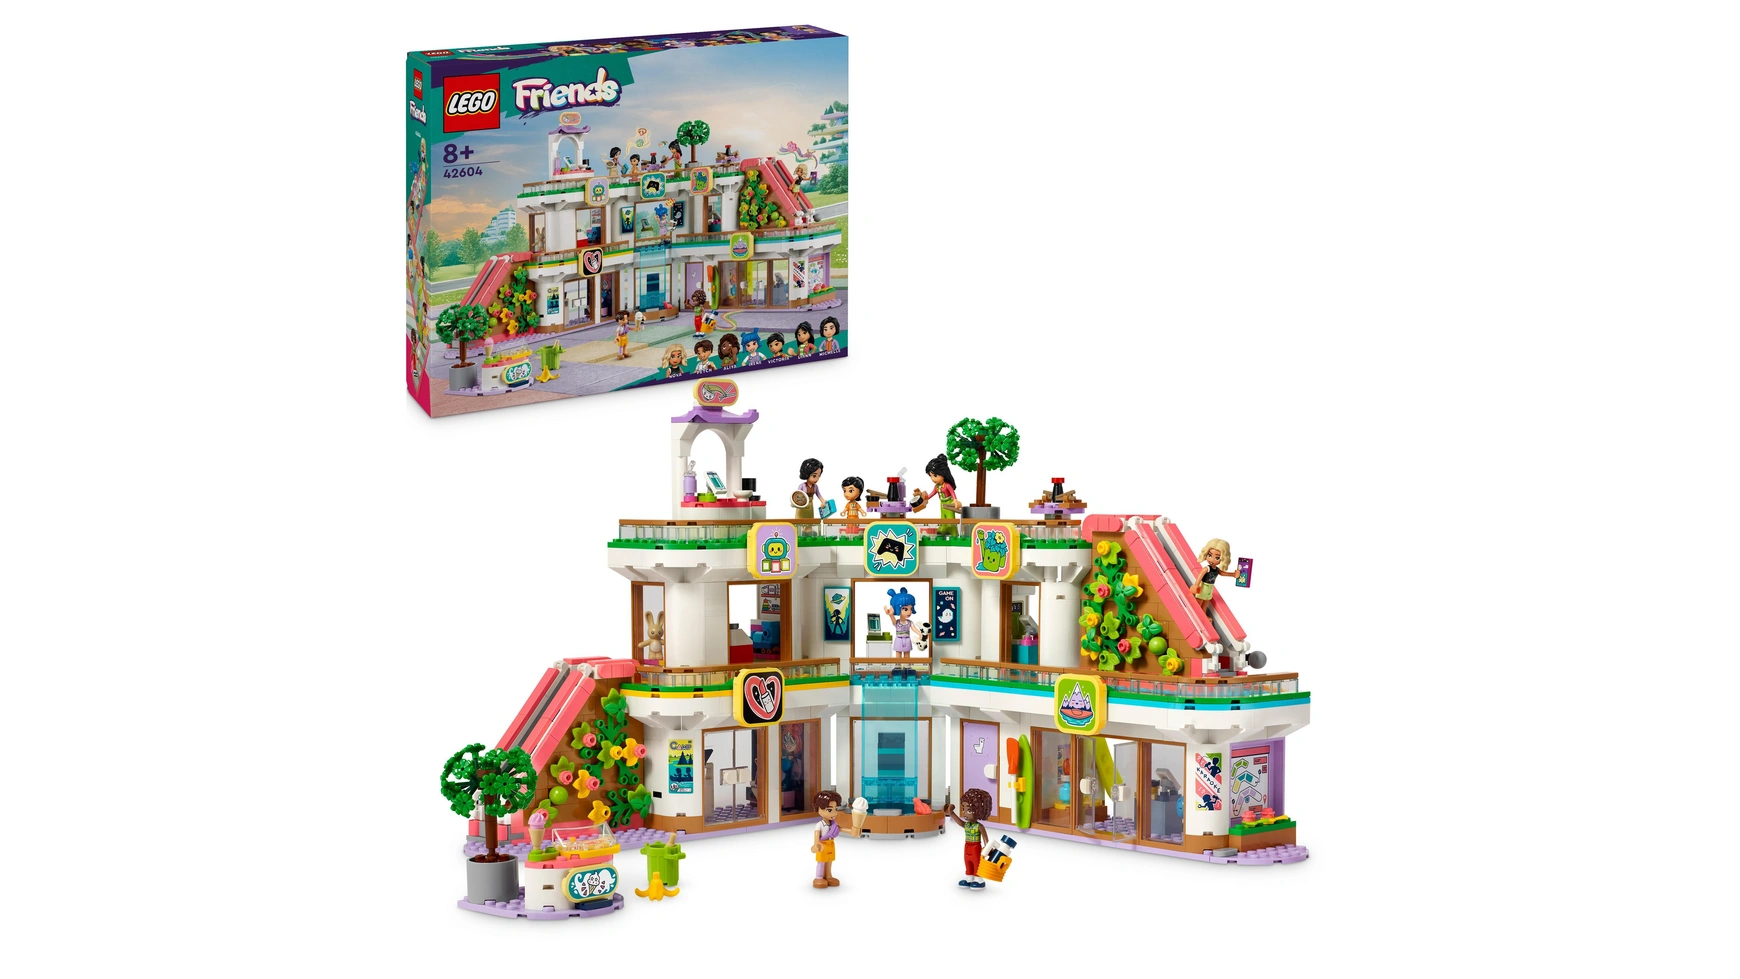 цена Lego Friends Универмаг Хартлейк Сити, кукольный домик с фигурками